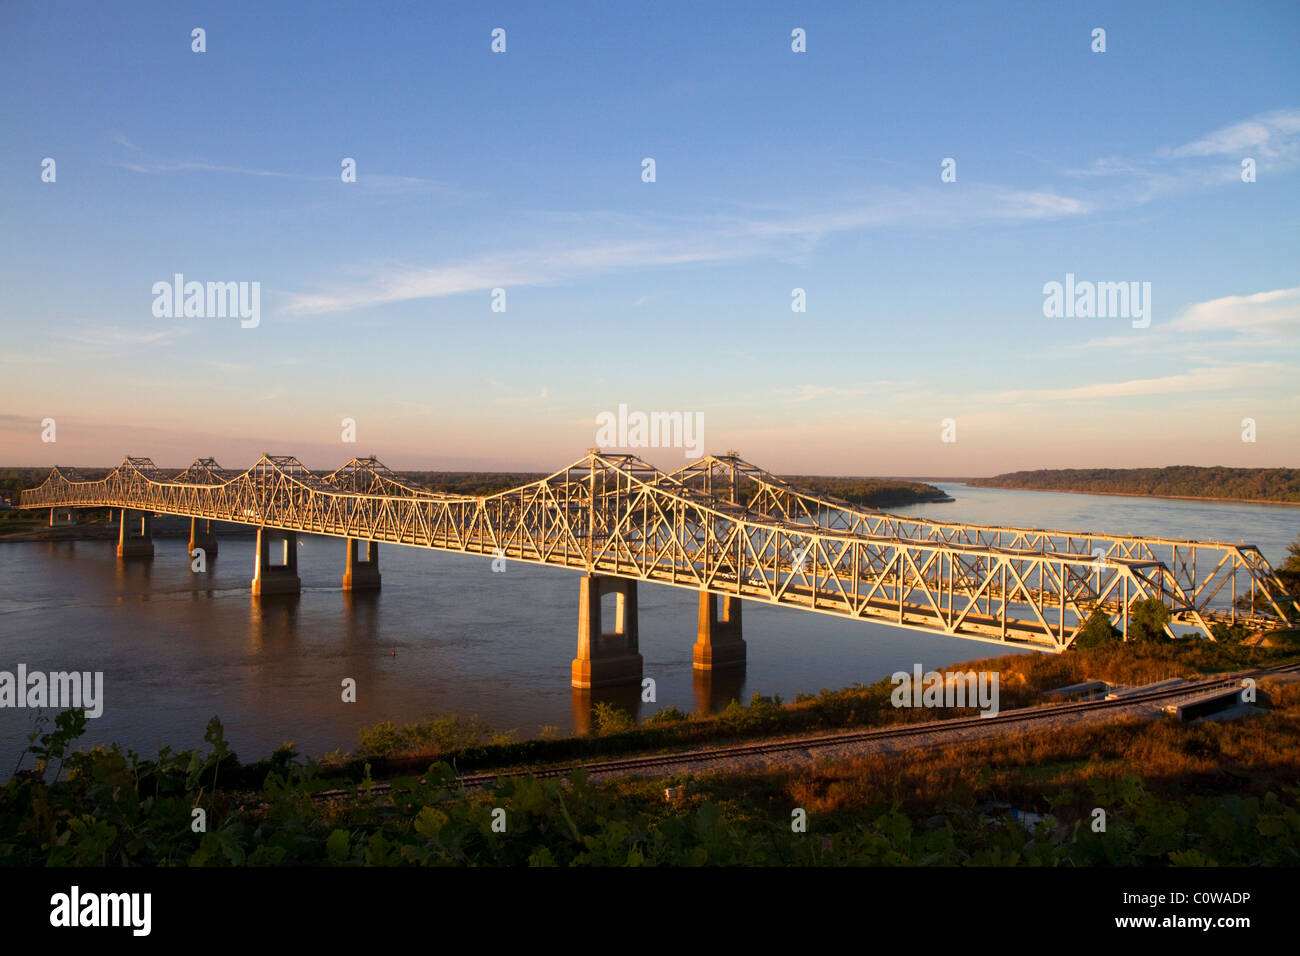 Die Natchez-Vidalia Brücken über den Mississippi River zwischen Vidalia, Louisiana und Natchez, Mississippi, Vereinigte Staaten. Stockfoto